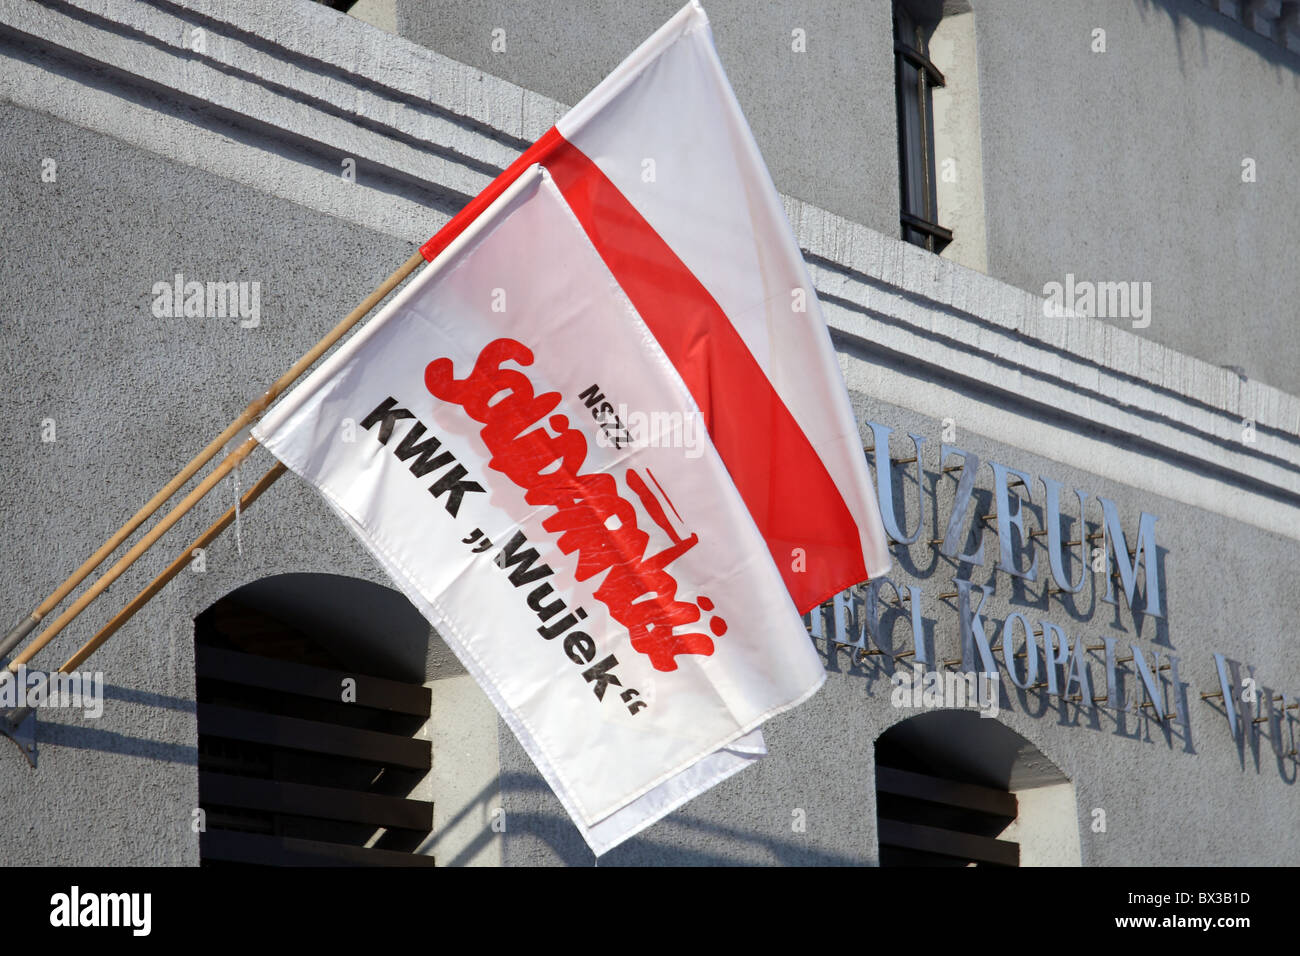 La journée 'Miner' en Pologne. Pavillon du syndicat Solidarité, "la mine de charbon Wujek'. Katowice, Pologne. Banque D'Images